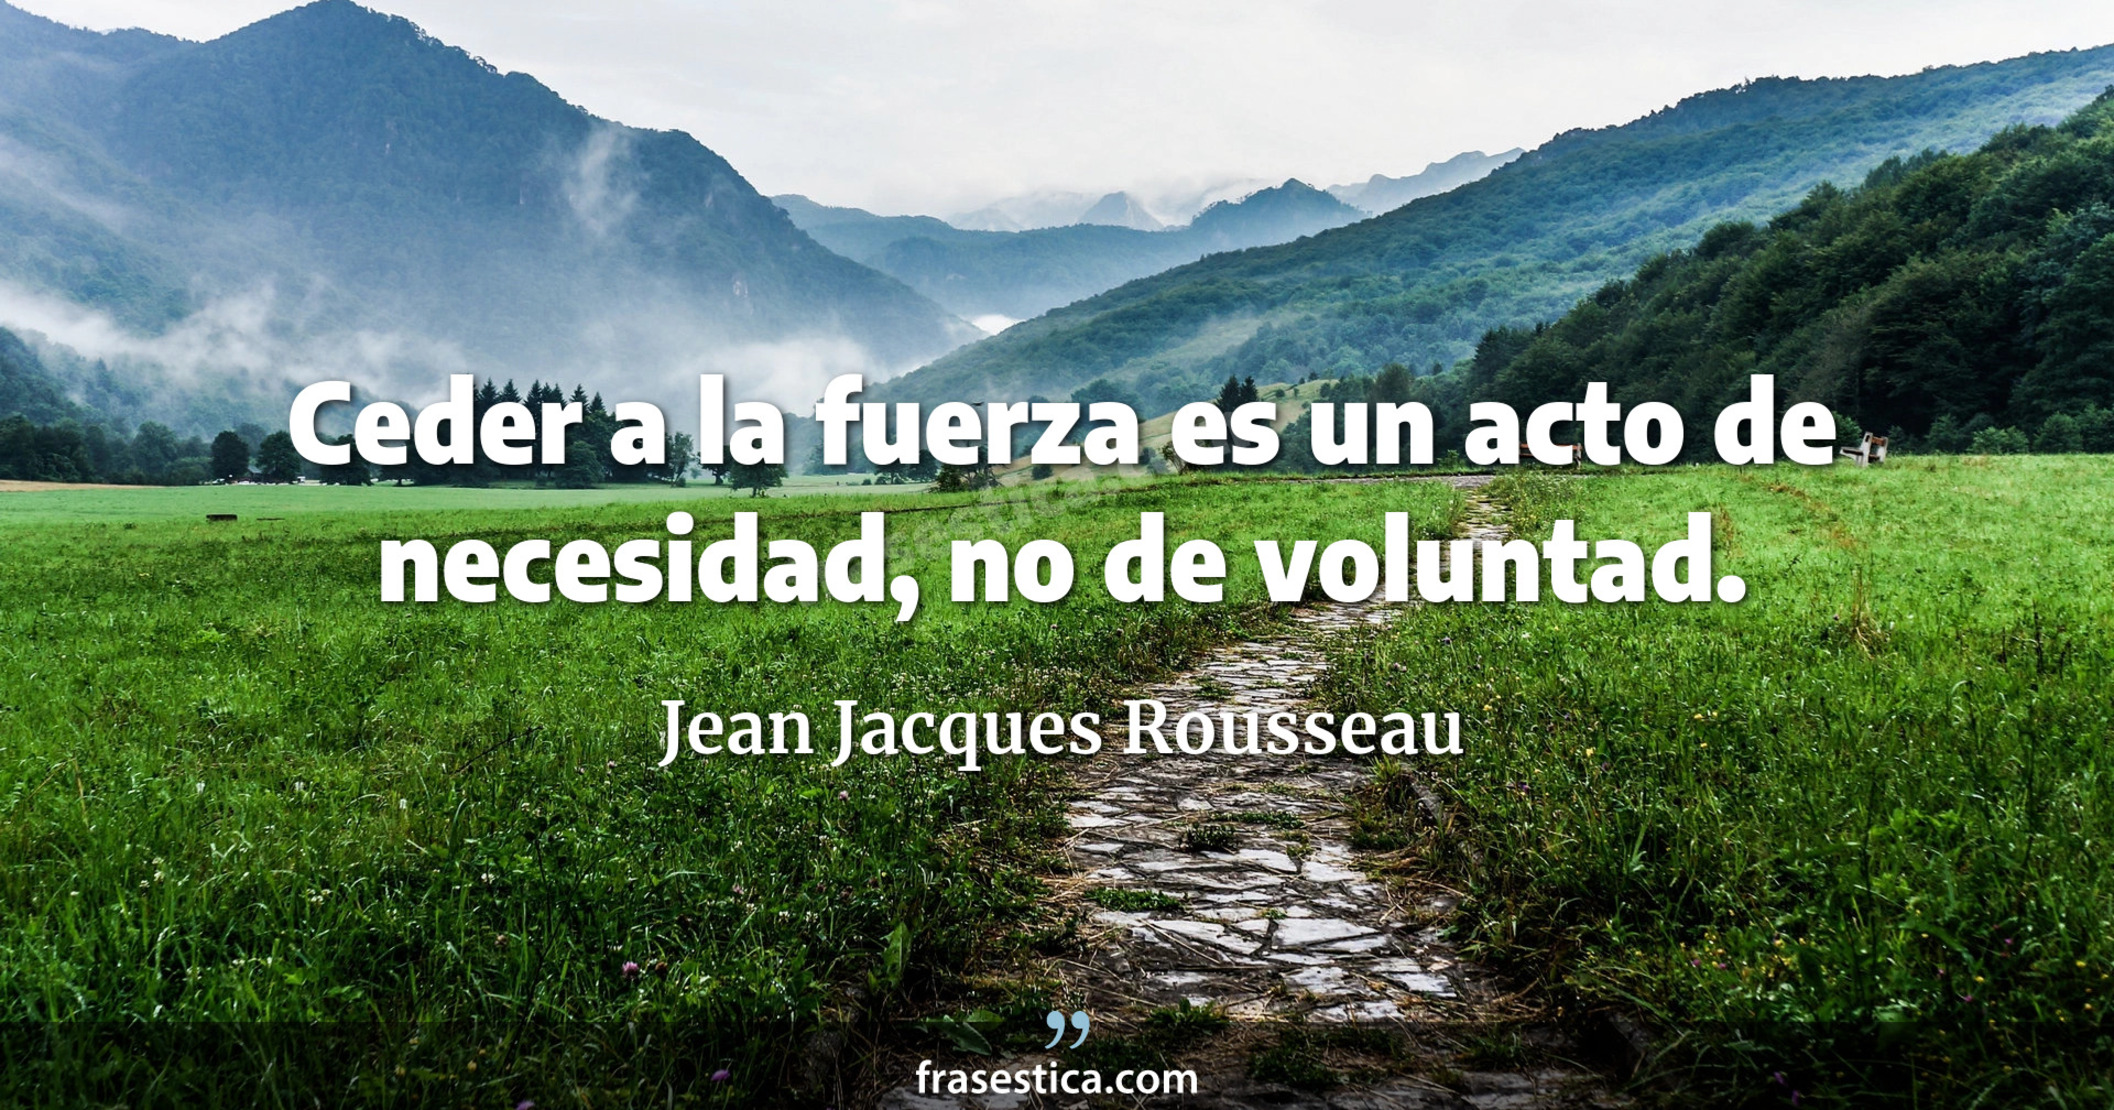 Ceder a la fuerza es un acto de necesidad, no de voluntad. - Jean Jacques Rousseau